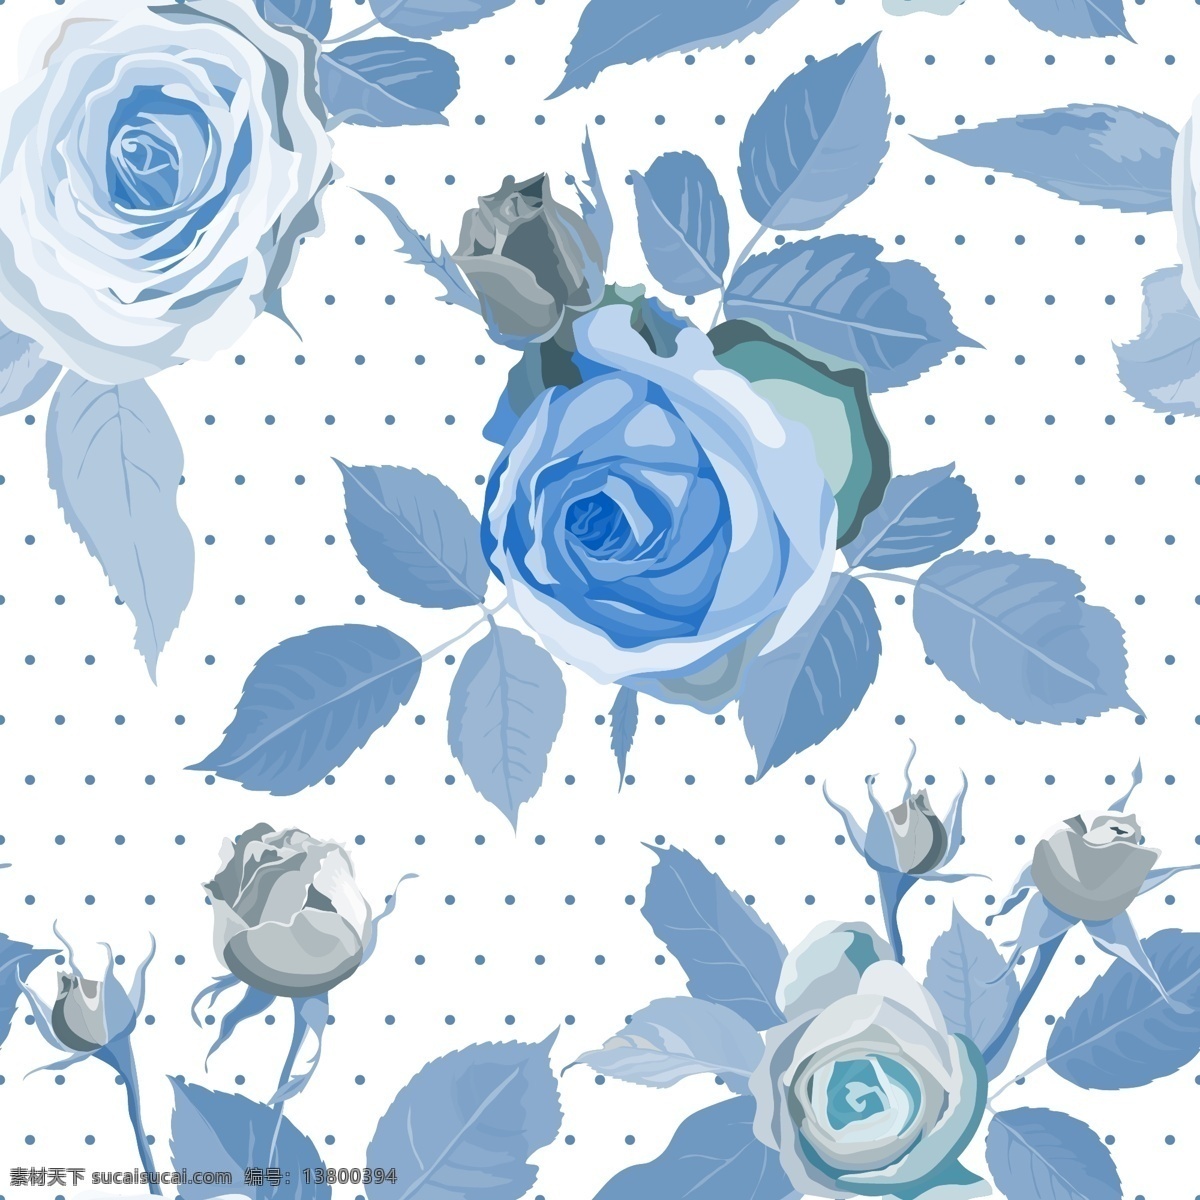 蓝色 玫瑰花 无缝 背景 矢量 水玉点 蓝玫瑰 无缝背景 白色